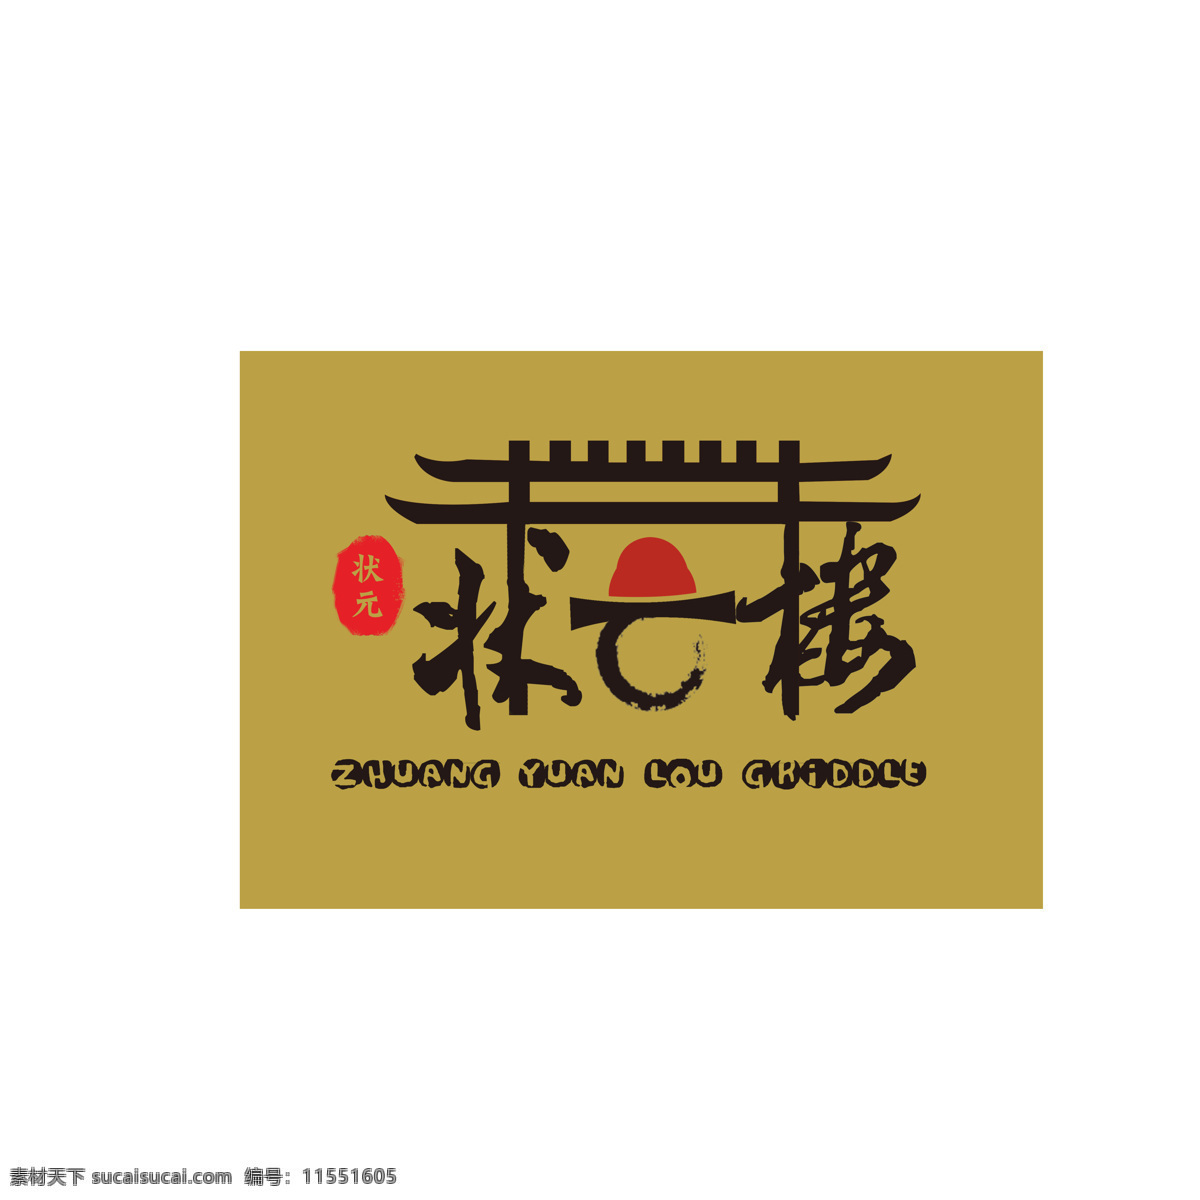 状元 楼 状元楼 酒楼 logo 餐饮logo 餐饮图标 标志 牌楼logo 古典 中国风 标志图标 其他图标